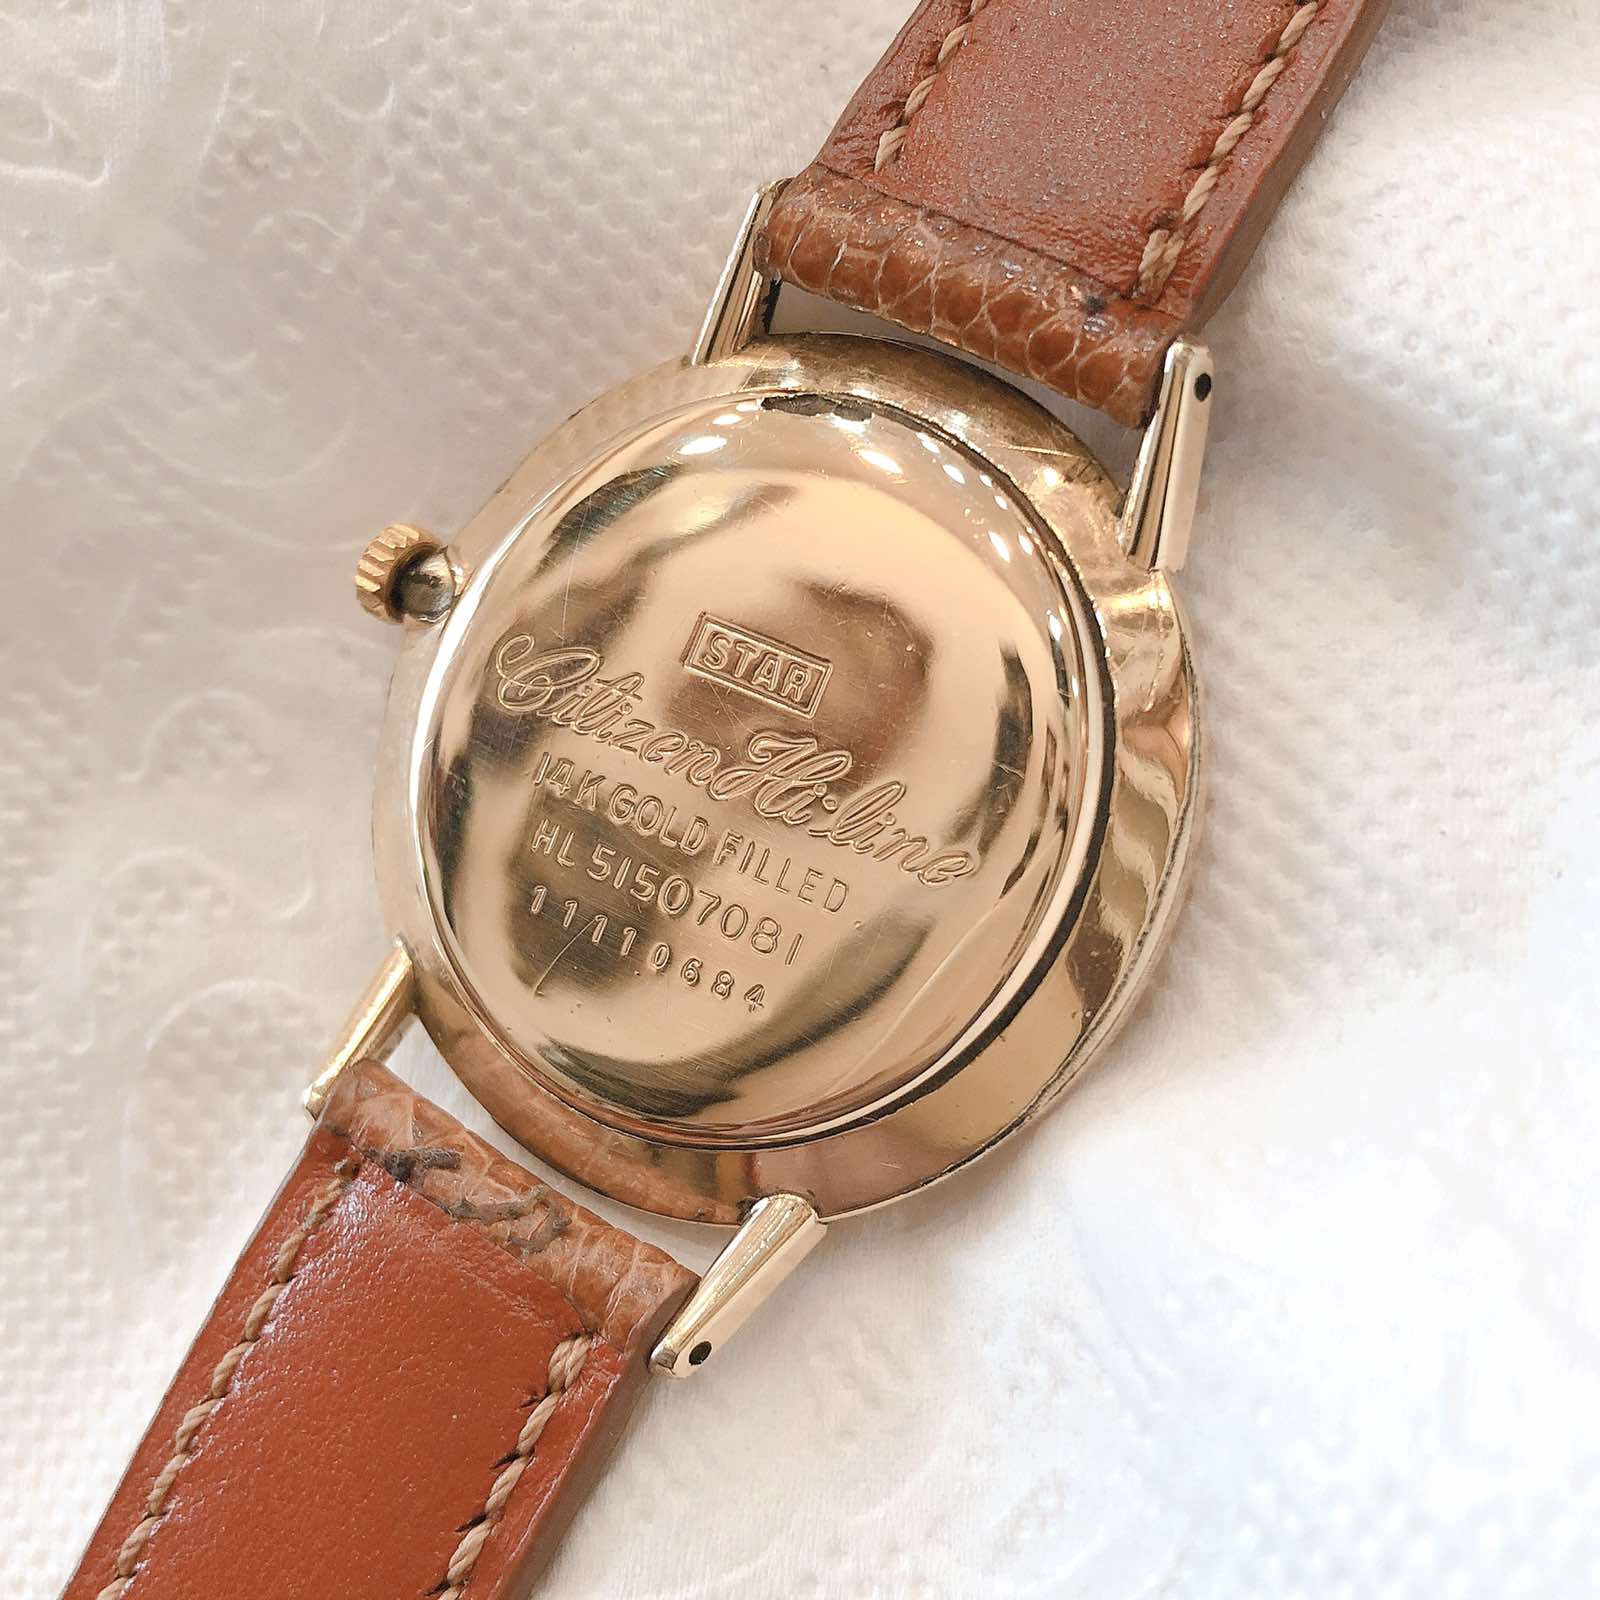 Đồng hồ cổ Citizen Hiline lên dây 14k goldfilled chính hãng nhật bản